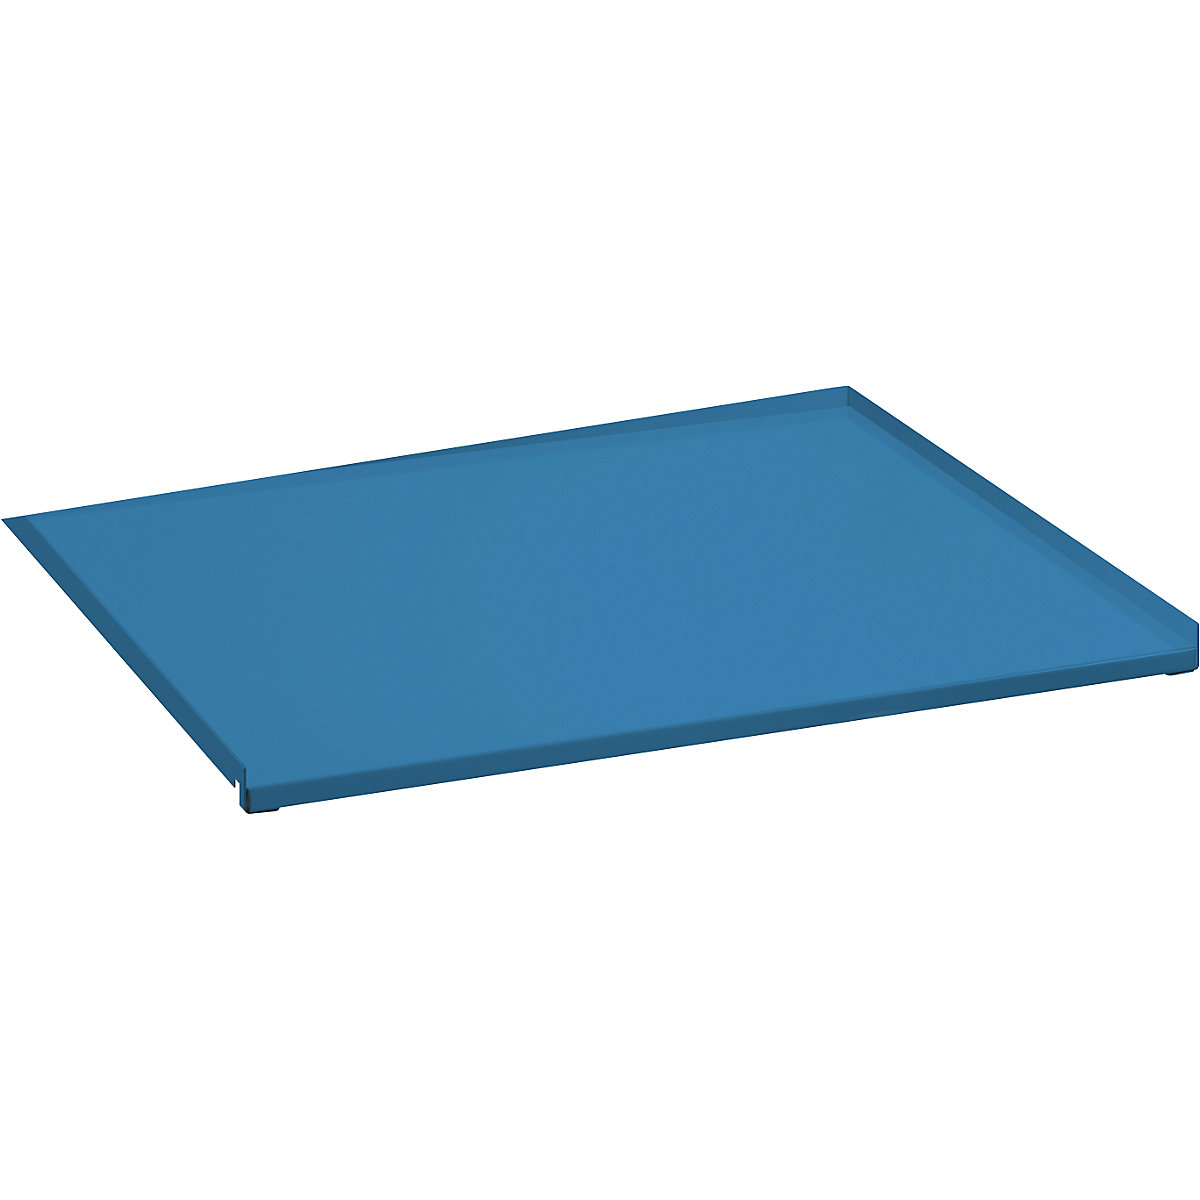 Plechový kryt pro výtažný rám – LISTA, jednoduchý výsuv, pro š x h 890 x 860 mm, světlá modrá-2